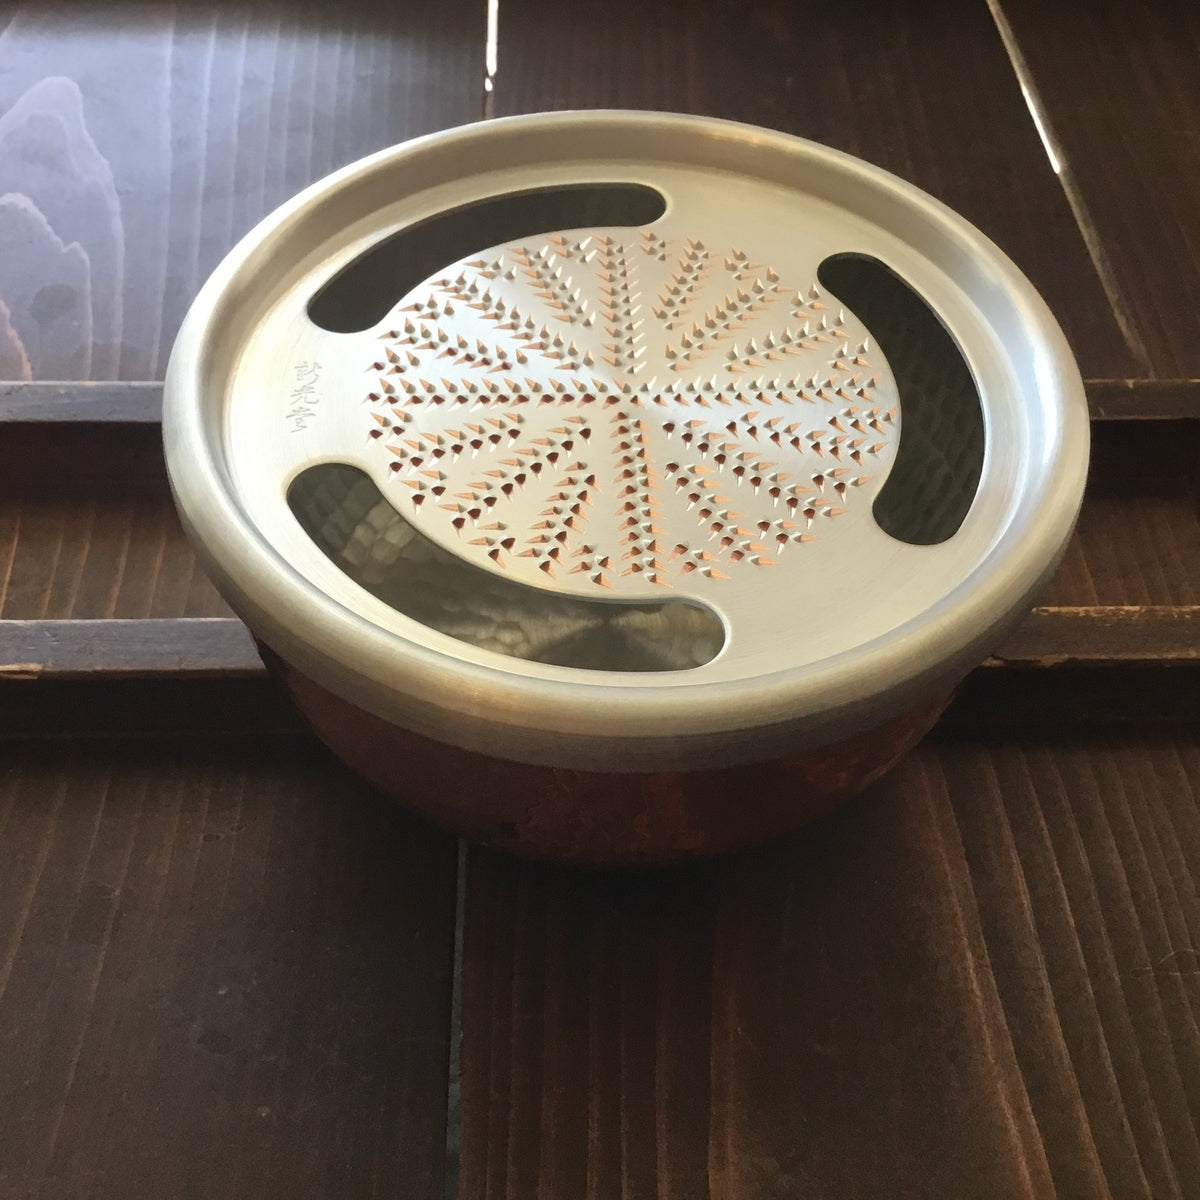 Oroshigane w/ Copper bowl